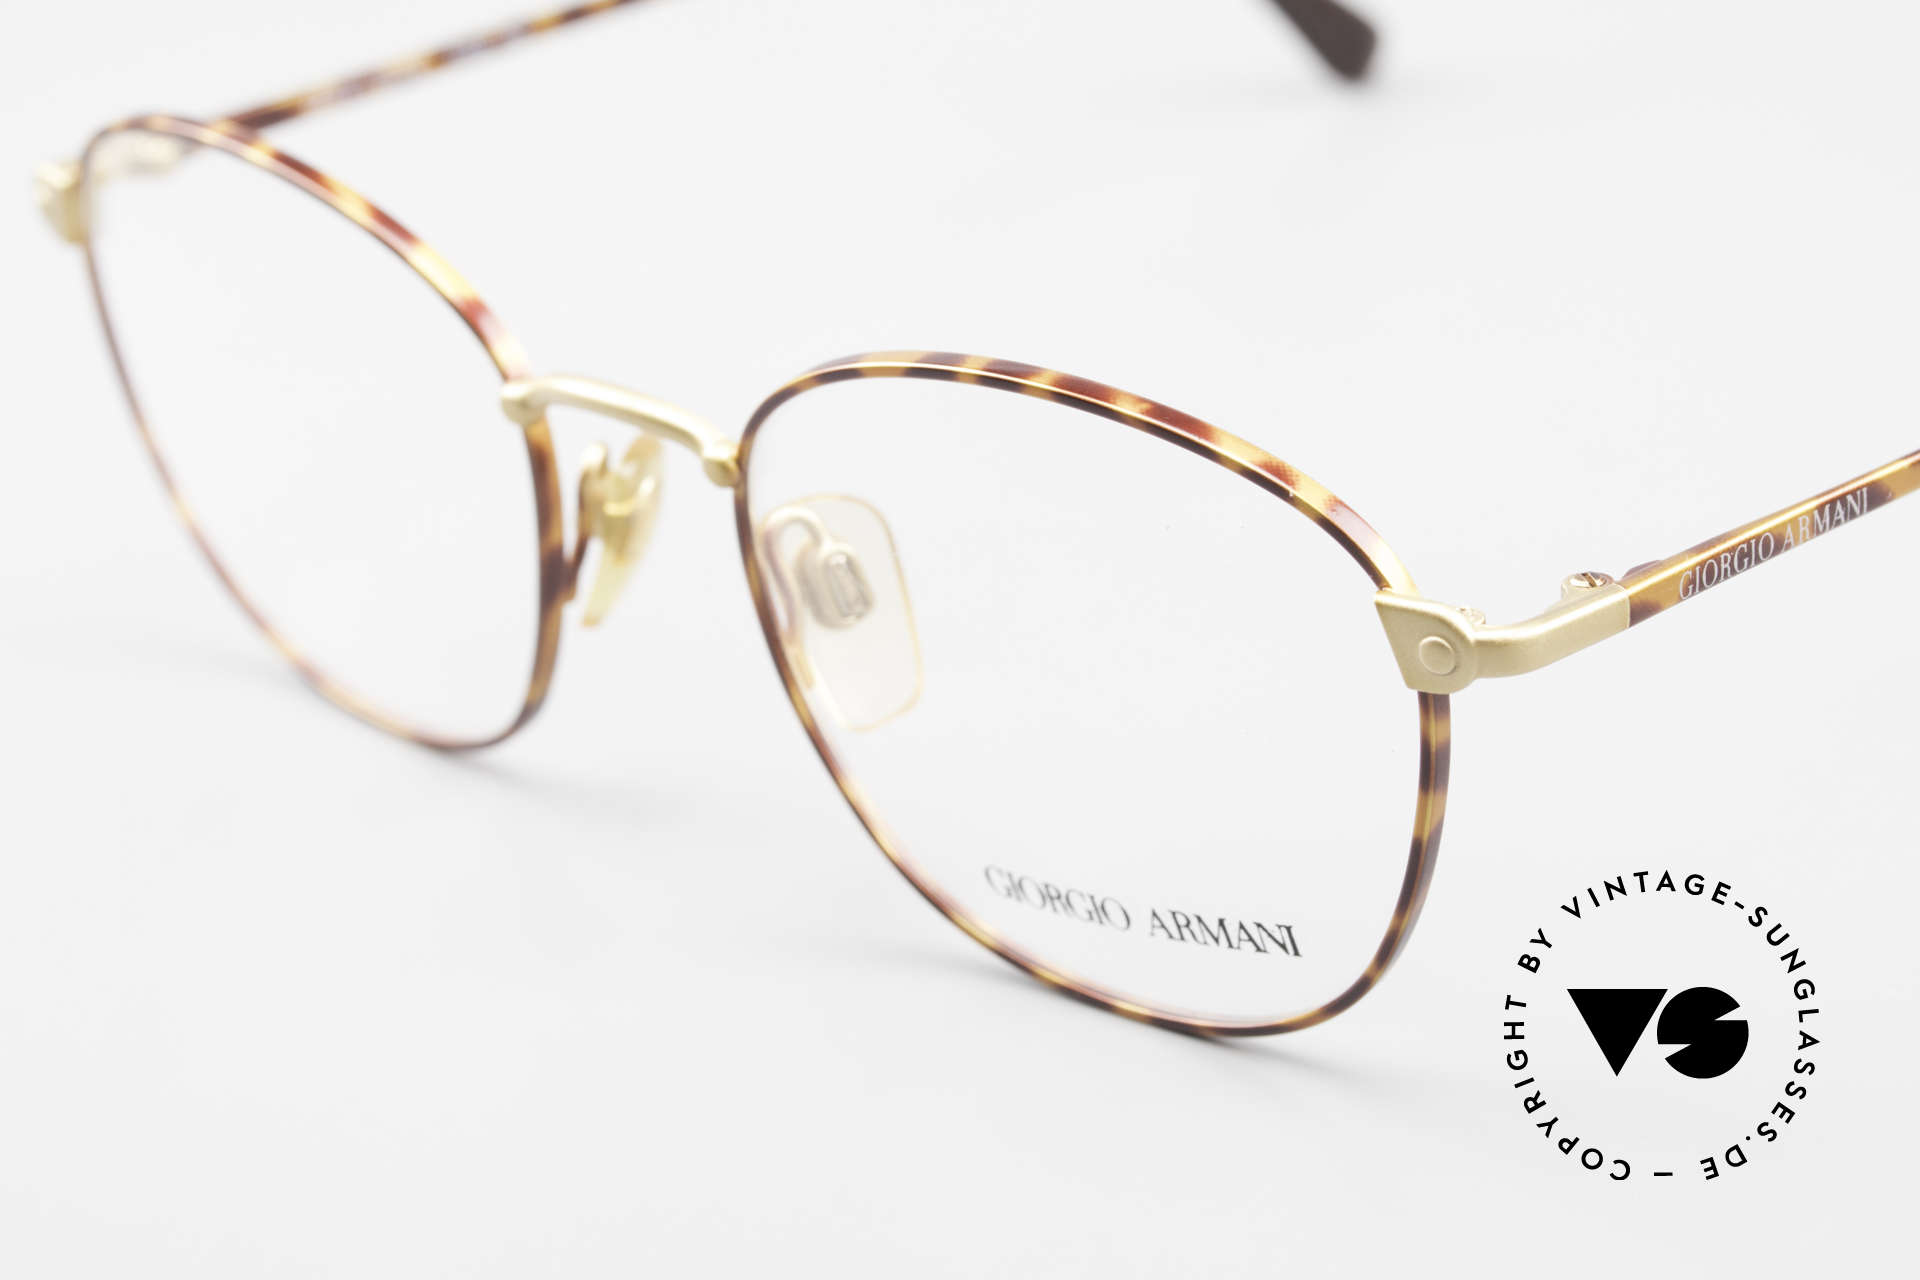 Giorgio Armani 168 Men's Eyeglasses 80's Vintage